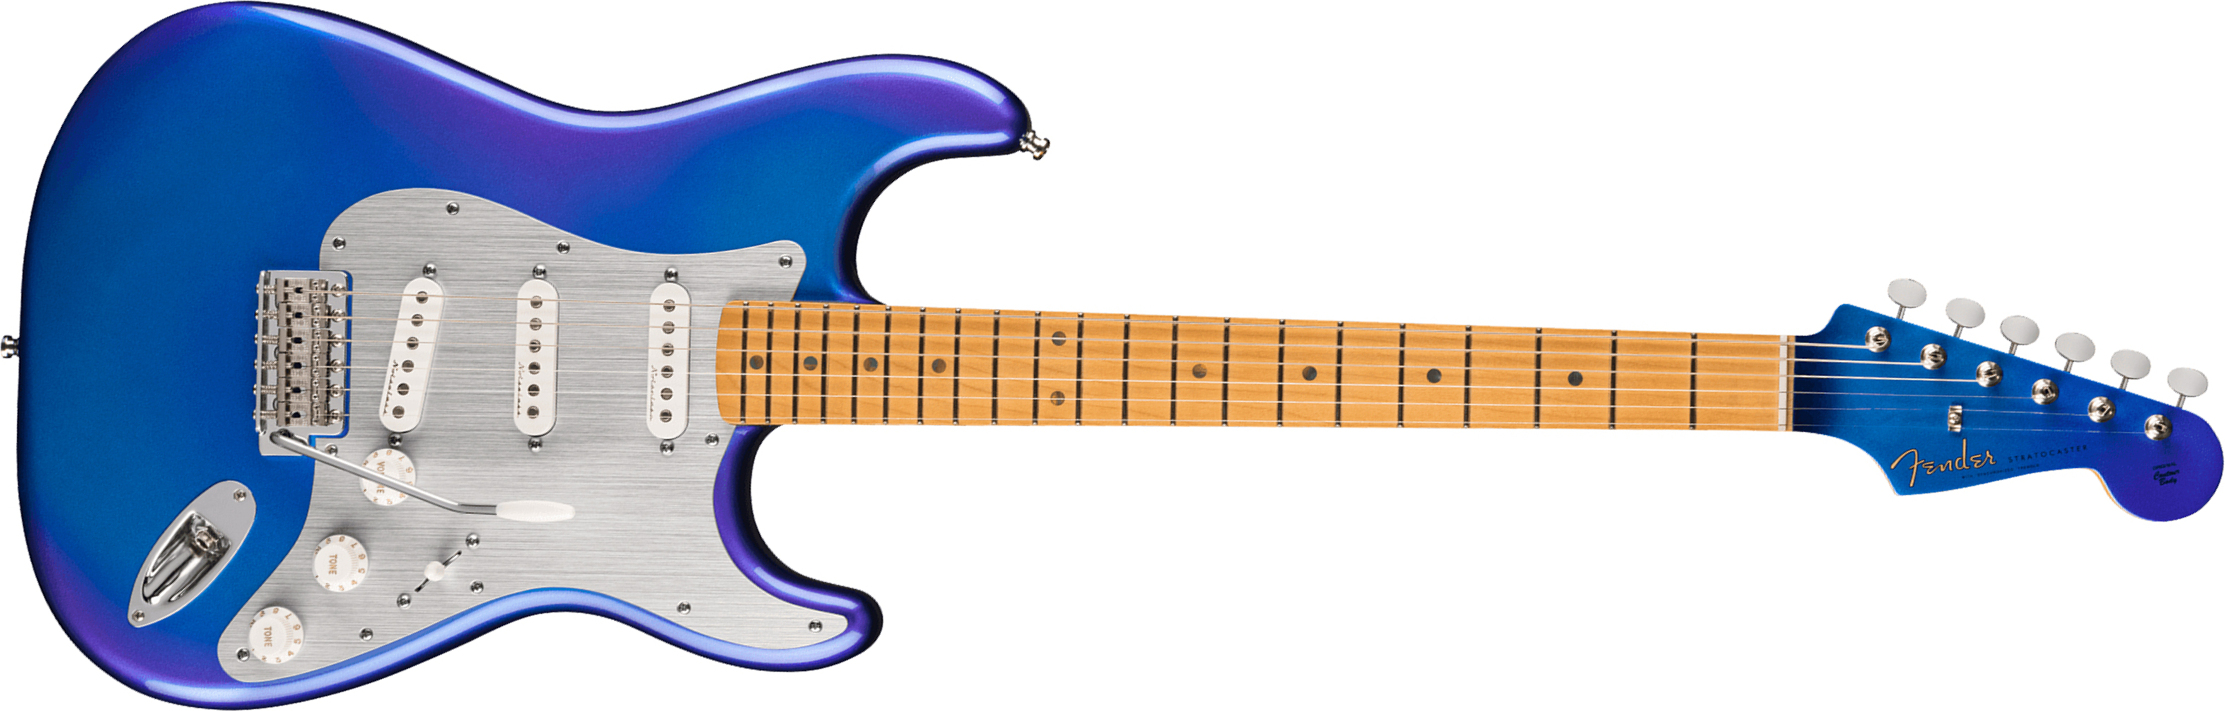 Fender H.e.r. Strat Ltd Signature Mex 3s Trem Mn - Blue Marlin - Elektrische gitaar in Str-vorm - Main picture